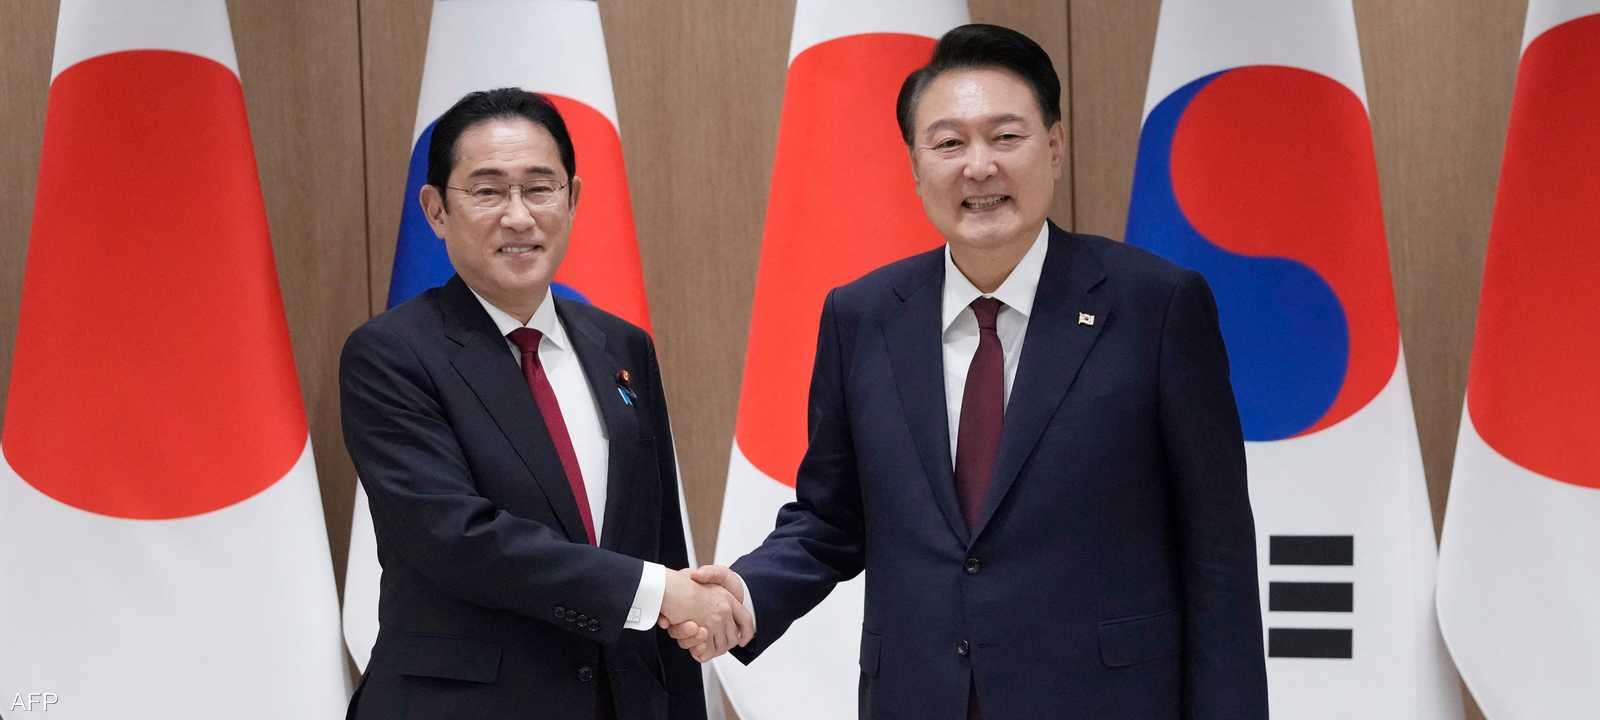 رئيس كوريا الجنوبية يصافح رئيس الوزراء الياباني